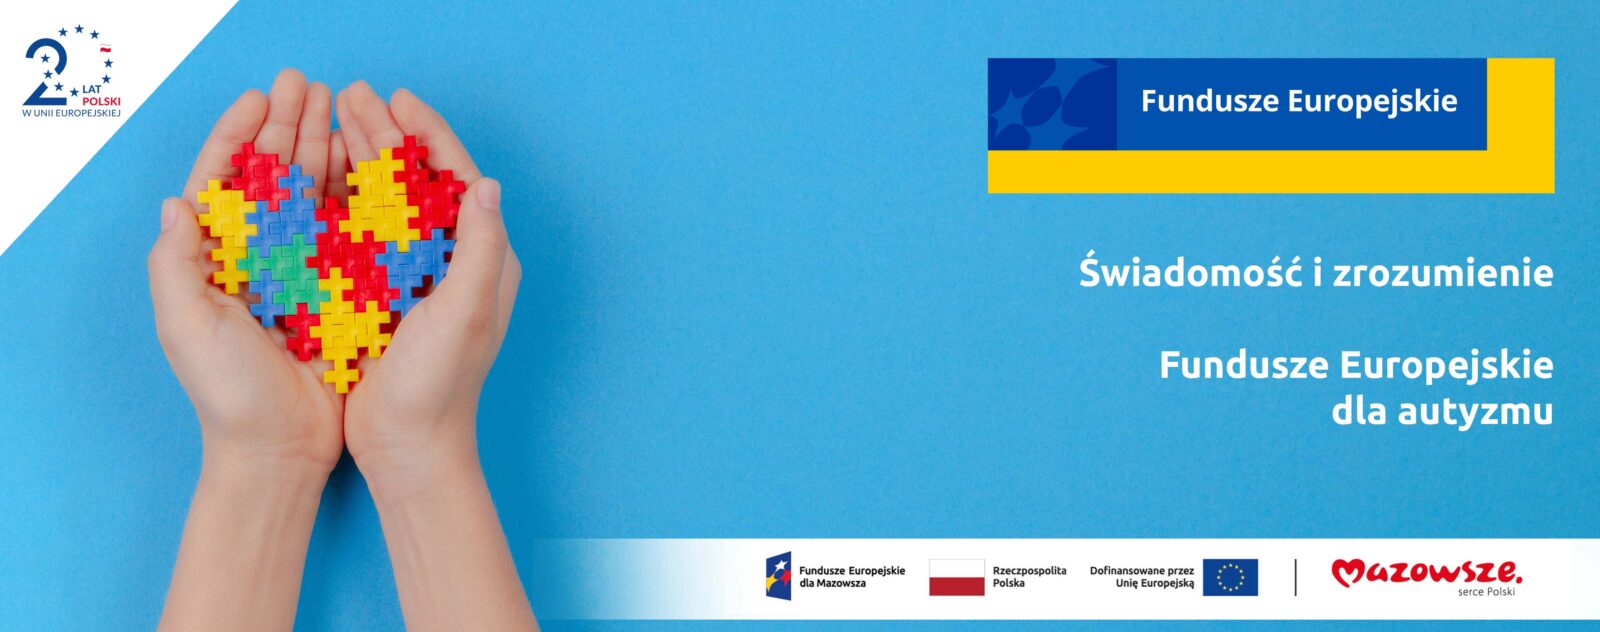 Świadomość i zrozumienie - Fundusze Europejskie dla autyzmu. Z lewej strony widać dłoń która trzyma serce złożone z kolorowych puzzli. Tło grafiki jest niebieskie - to kolor symbolizujący autyzm.